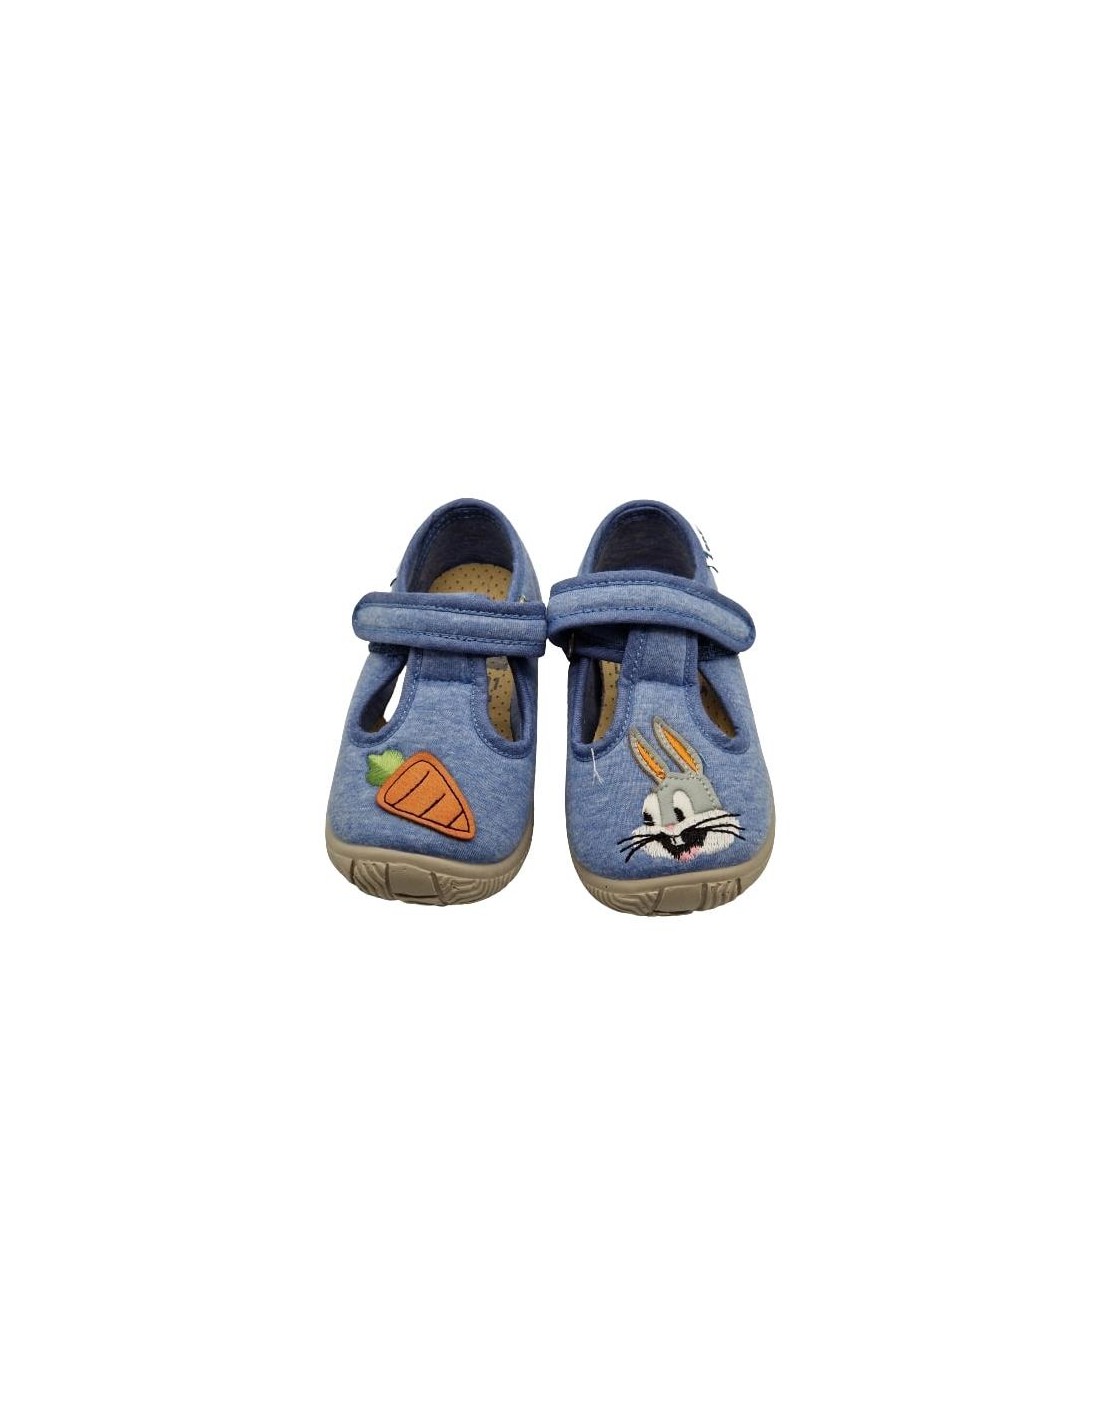 Comprar zapatillas de casa para niños con estampado de Minions Zapy